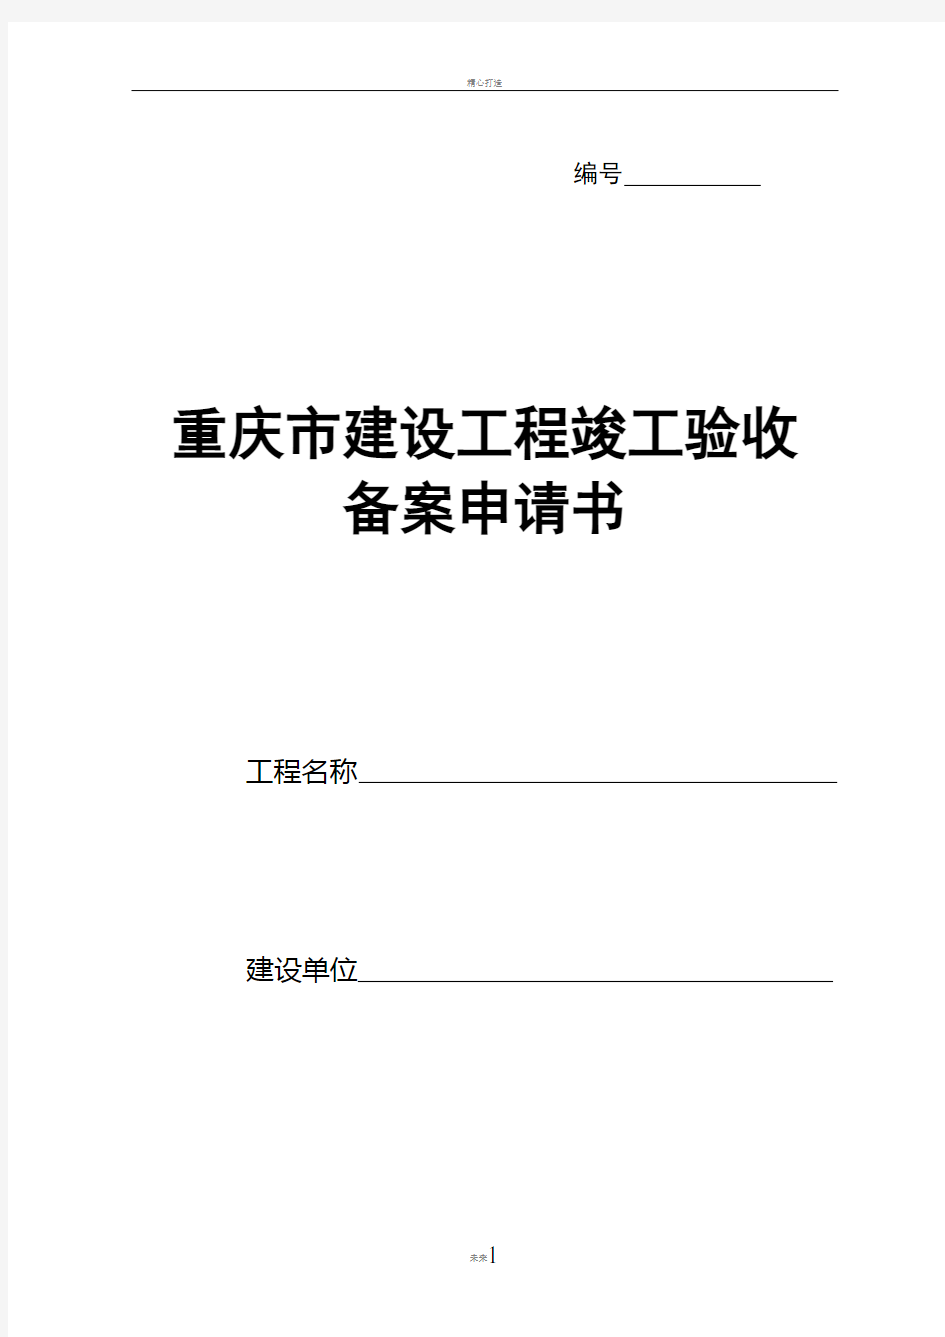 重庆市建设工程竣工验收备案申请书